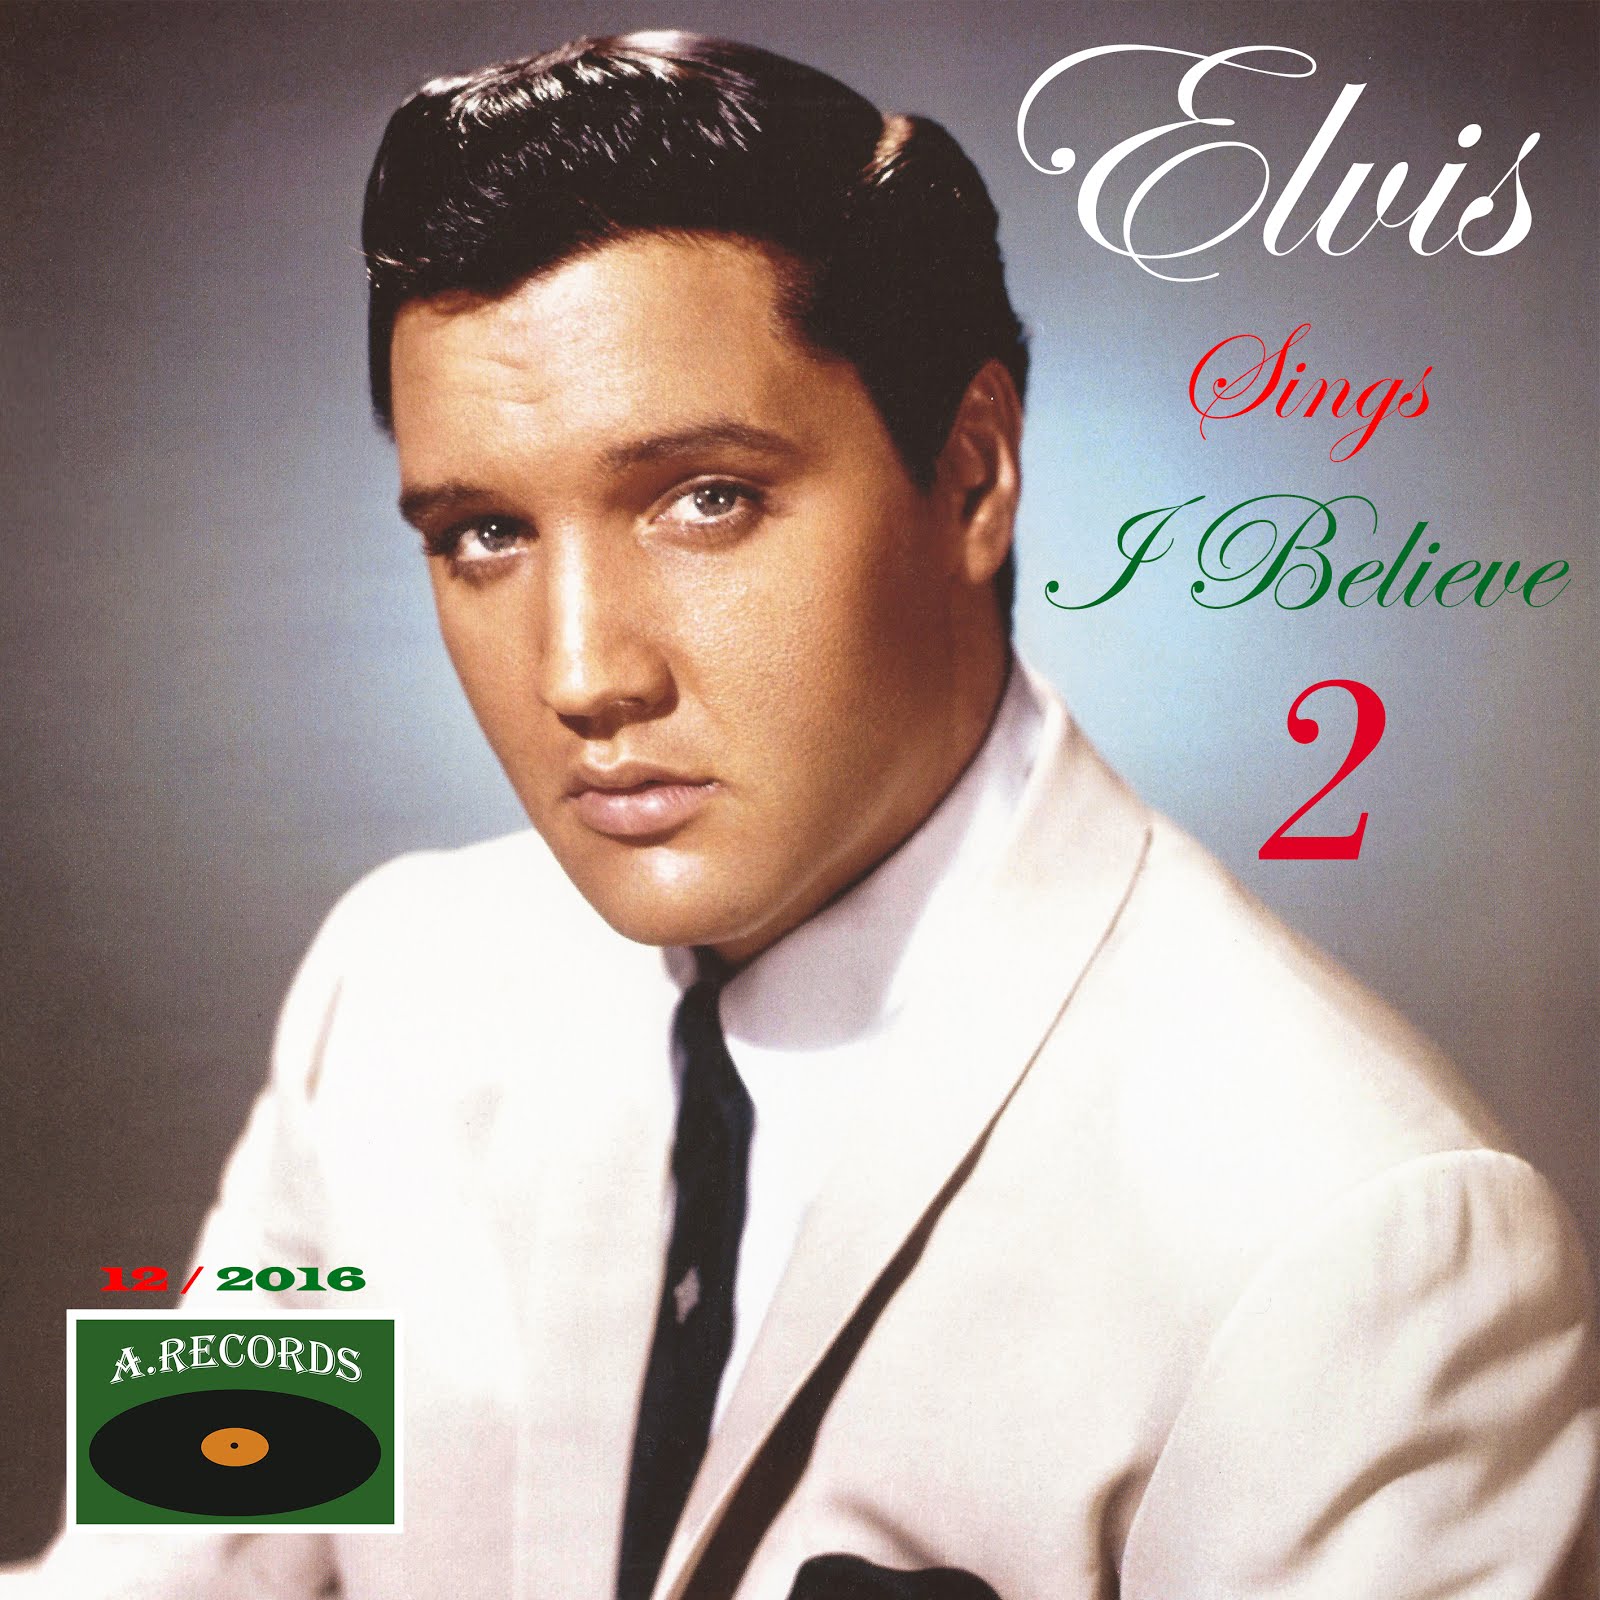 Elvis Sings I Believe - Volume 2 (December 2016)